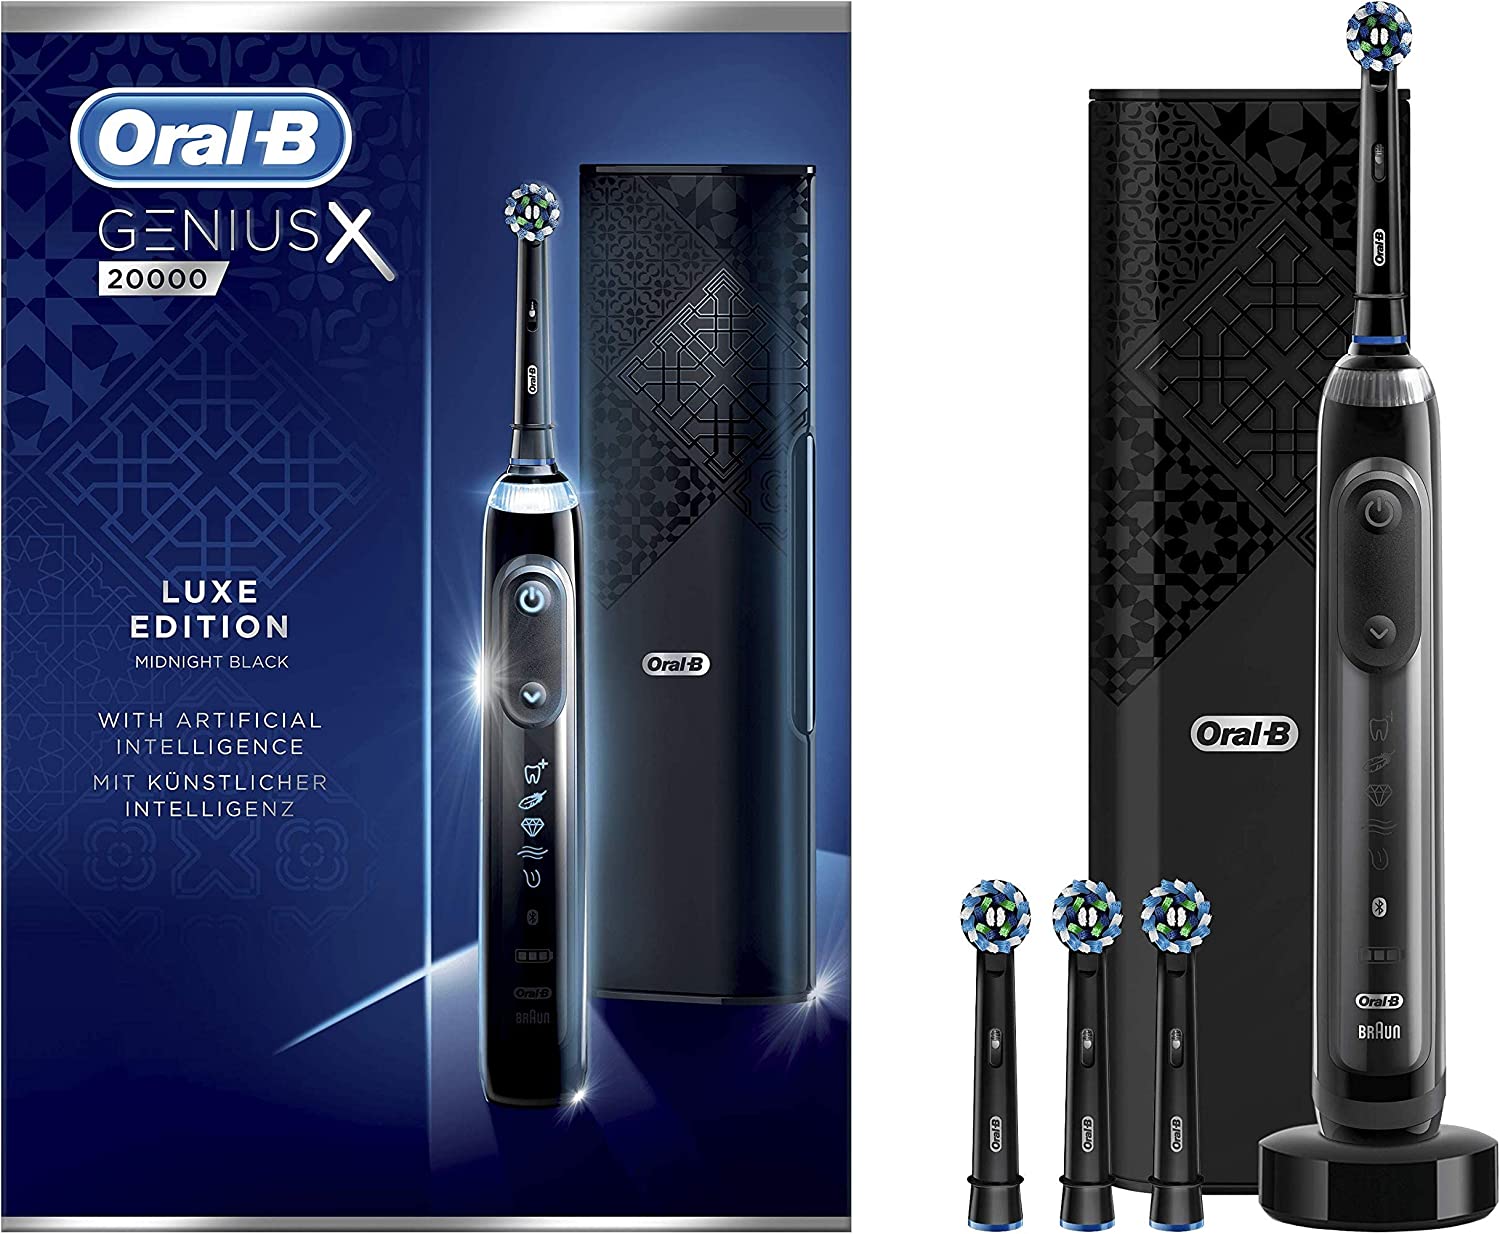 Oral-B Genius X Luxe Edition 20000 versus Oral-B IO 10